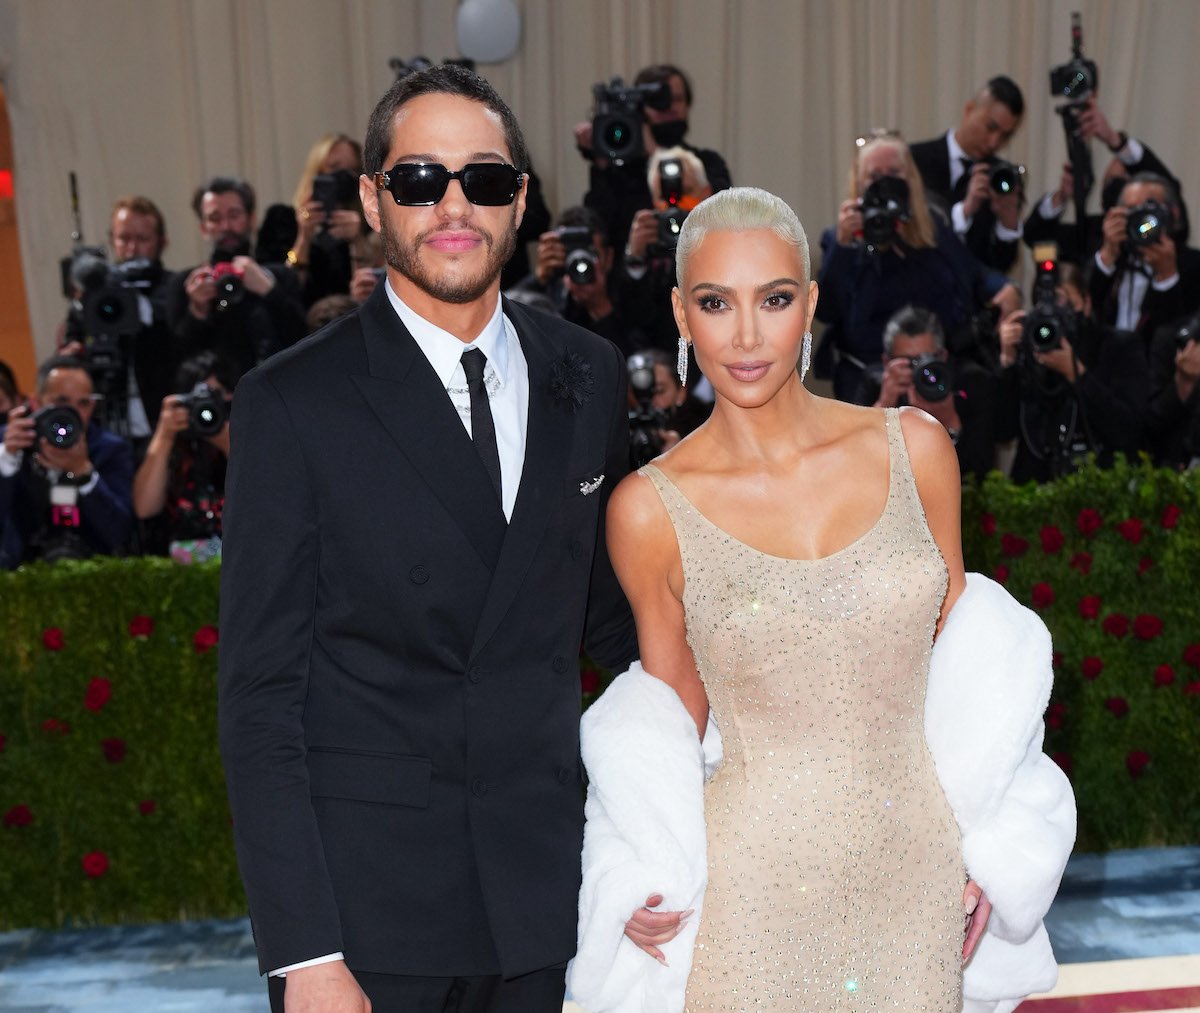 Kim Kardashian and Pete Davidson pose for photos at The 2022 Met Gala